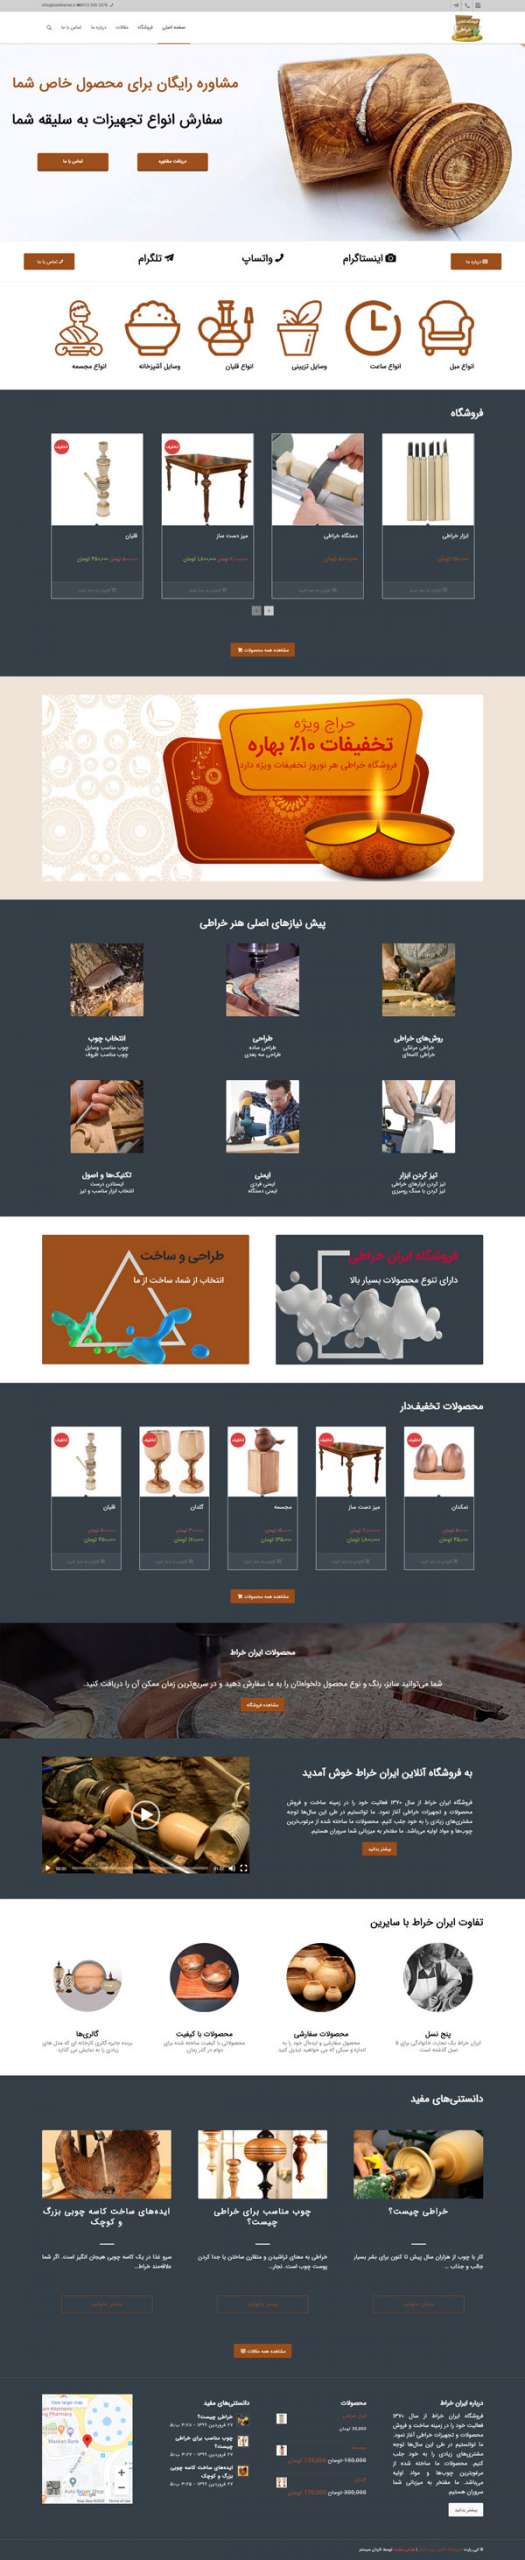 طراحی سایت ایران خراط | فروشگاه محصولات خراطی